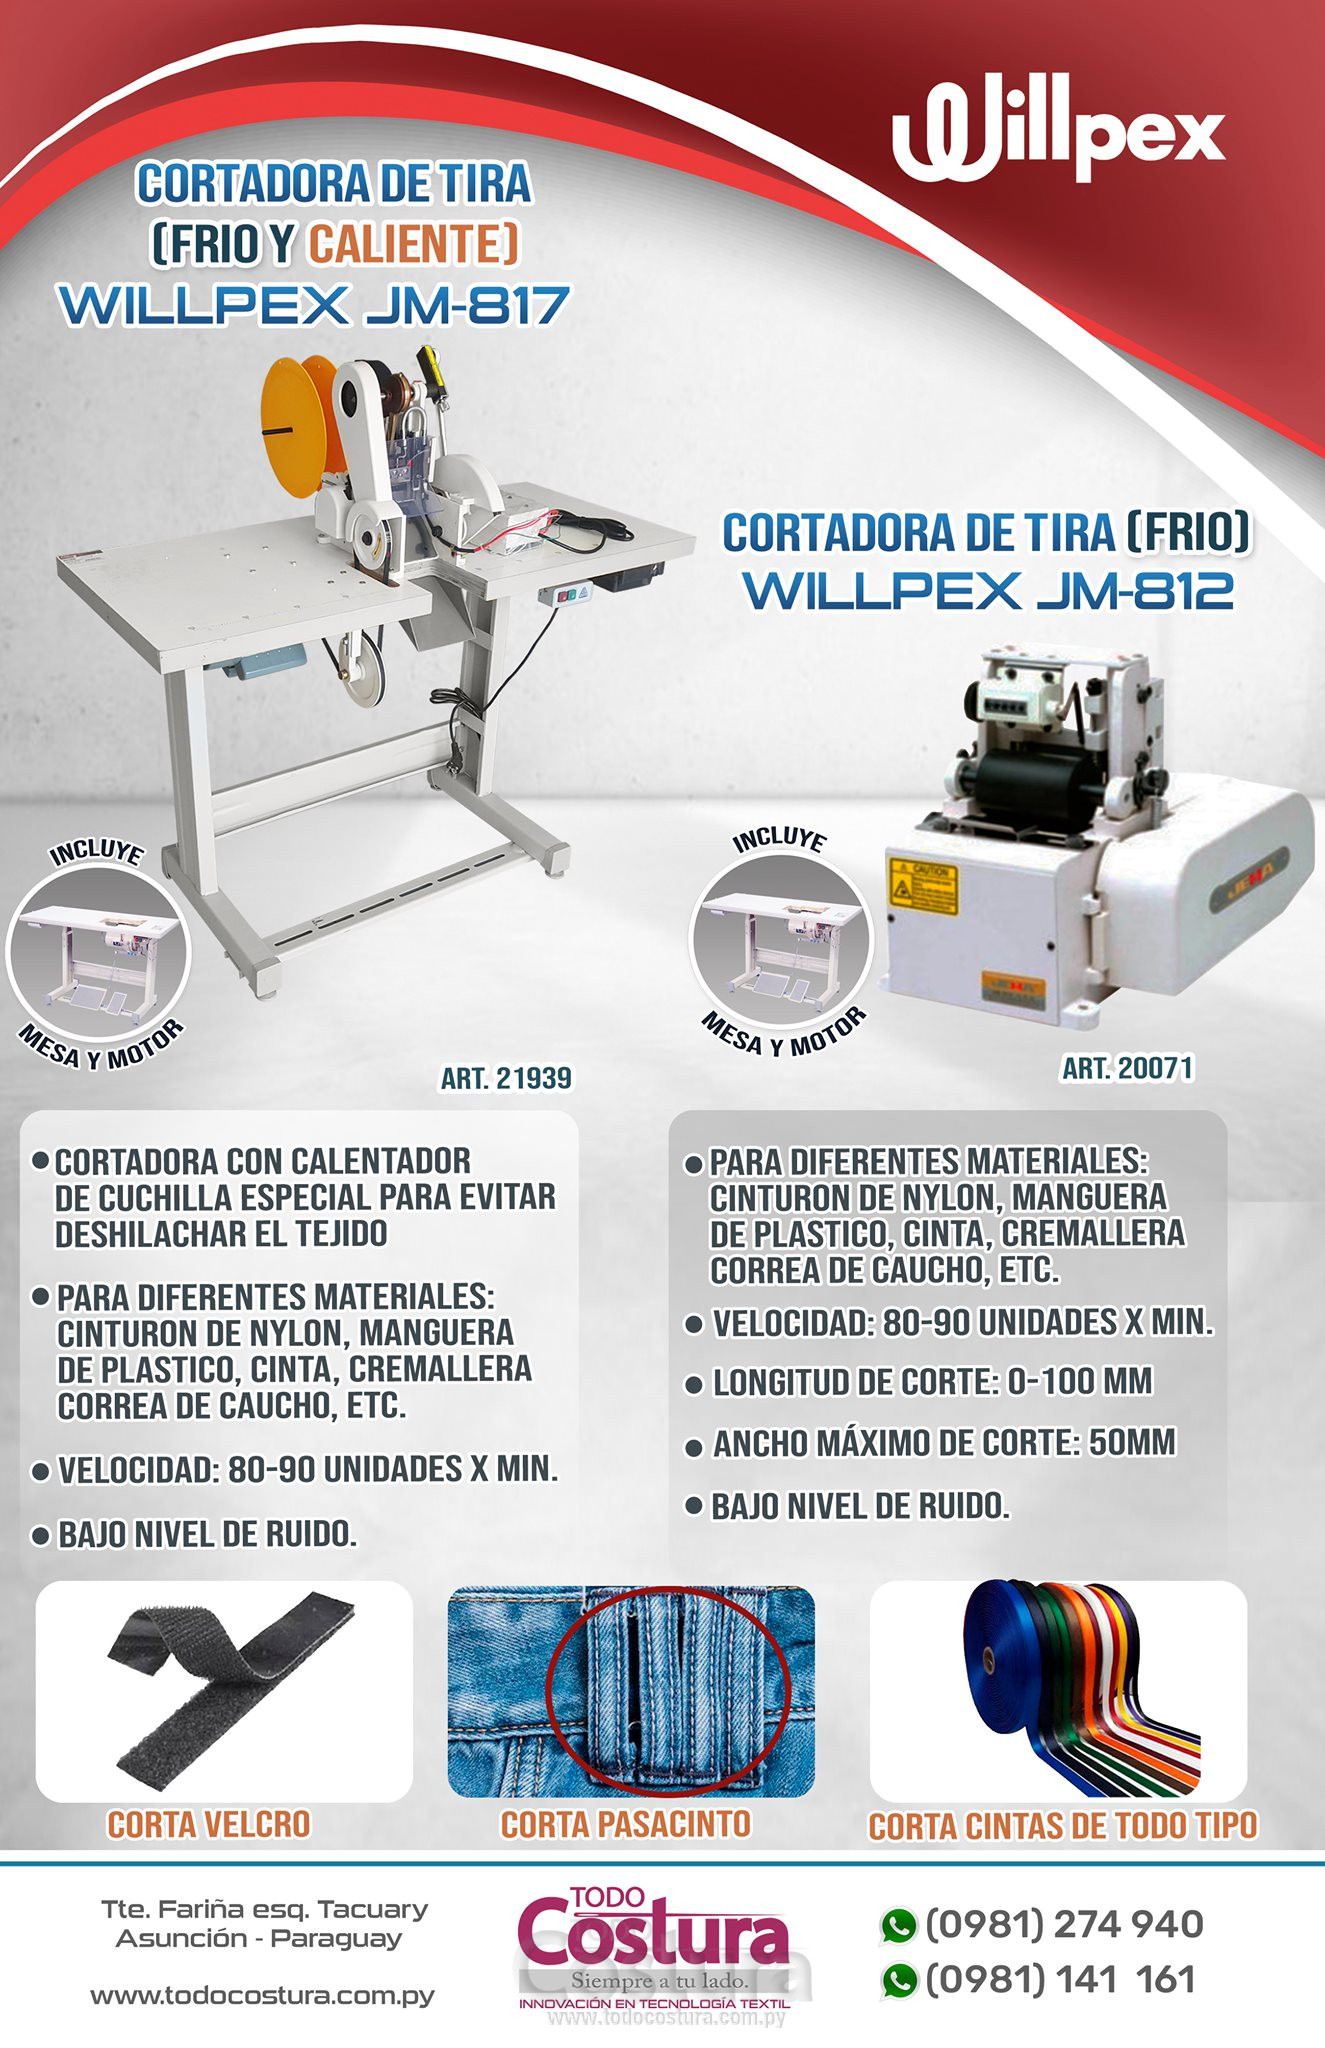 CORTADORA DE TIRA (EN FRIO) WILLPEX JM-812